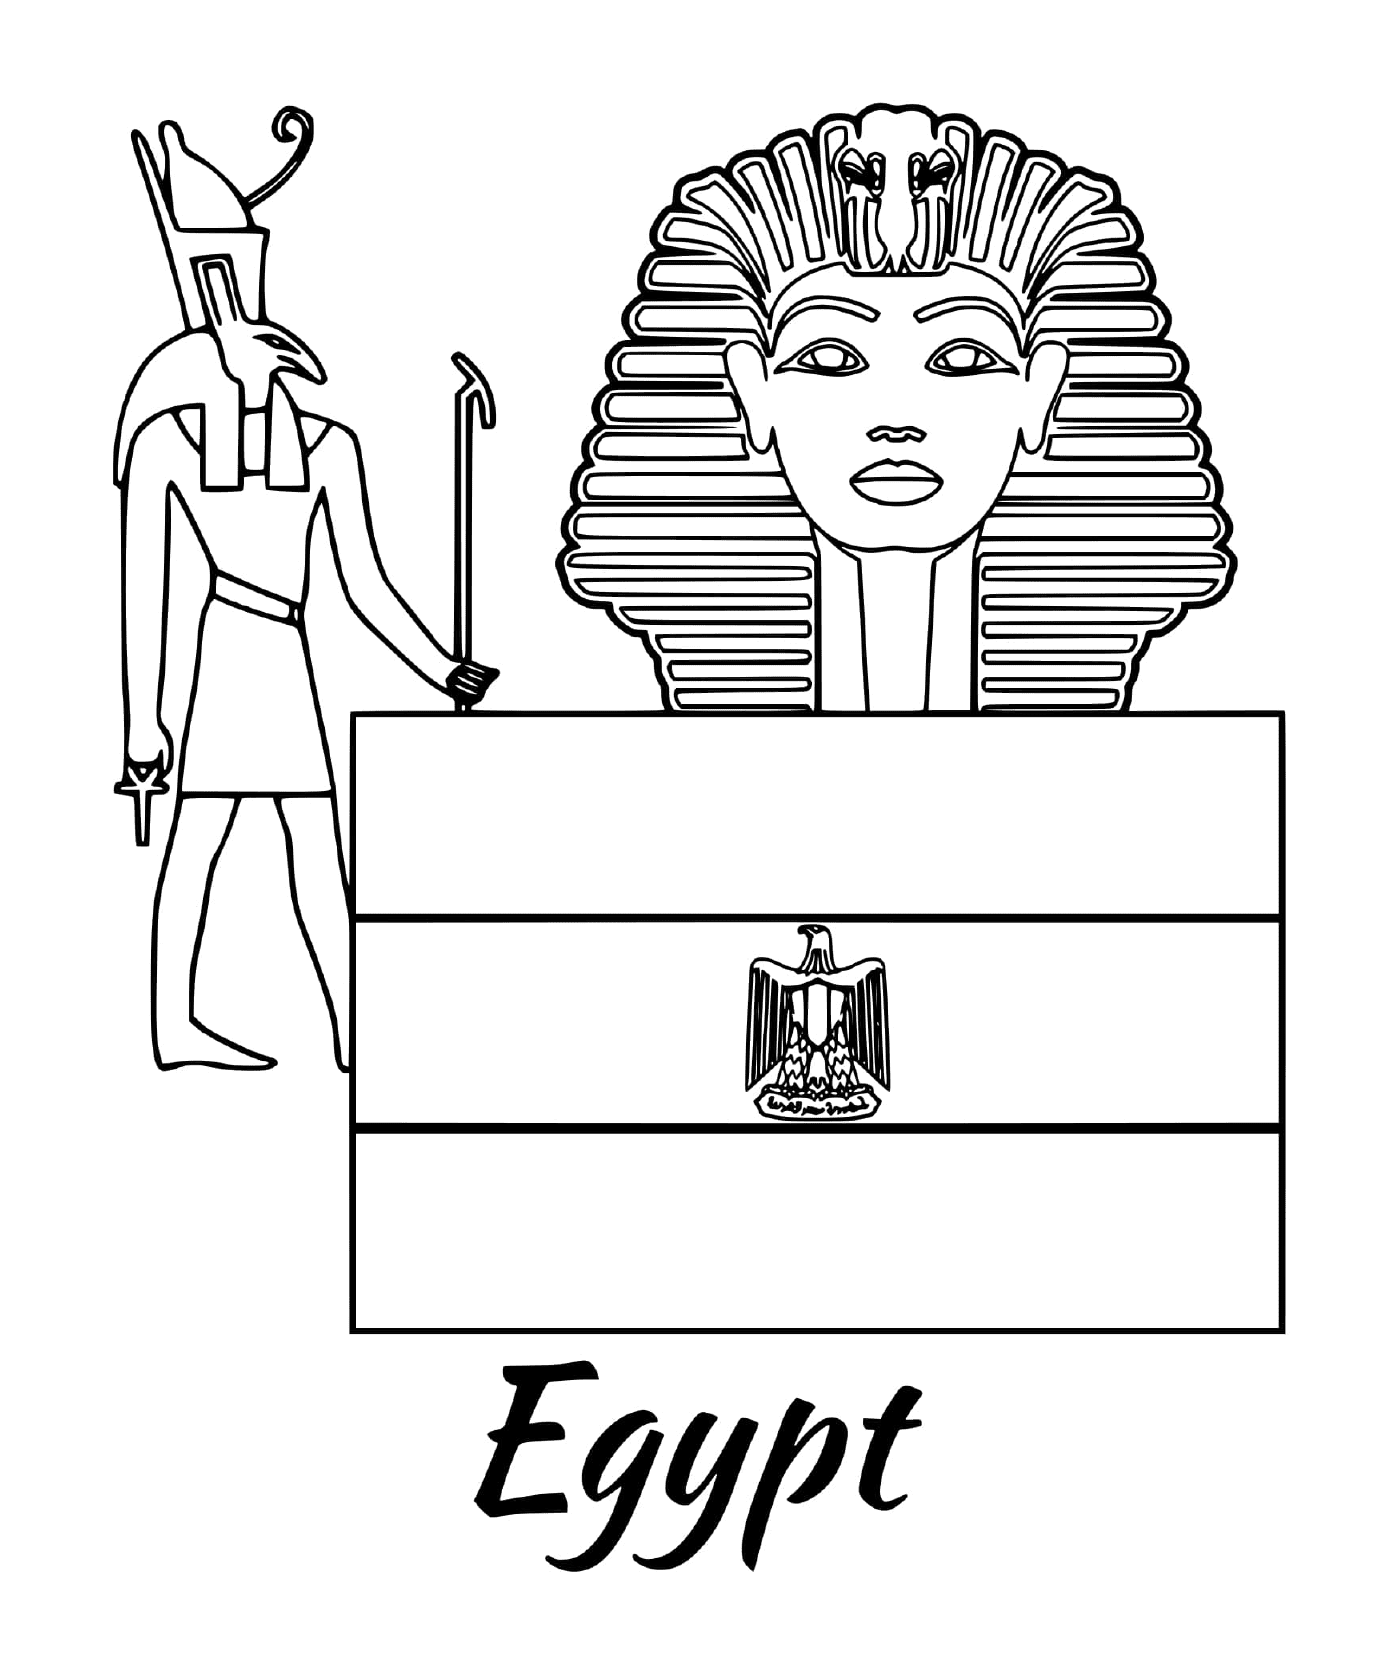  埃及与斯芬克斯的国旗 